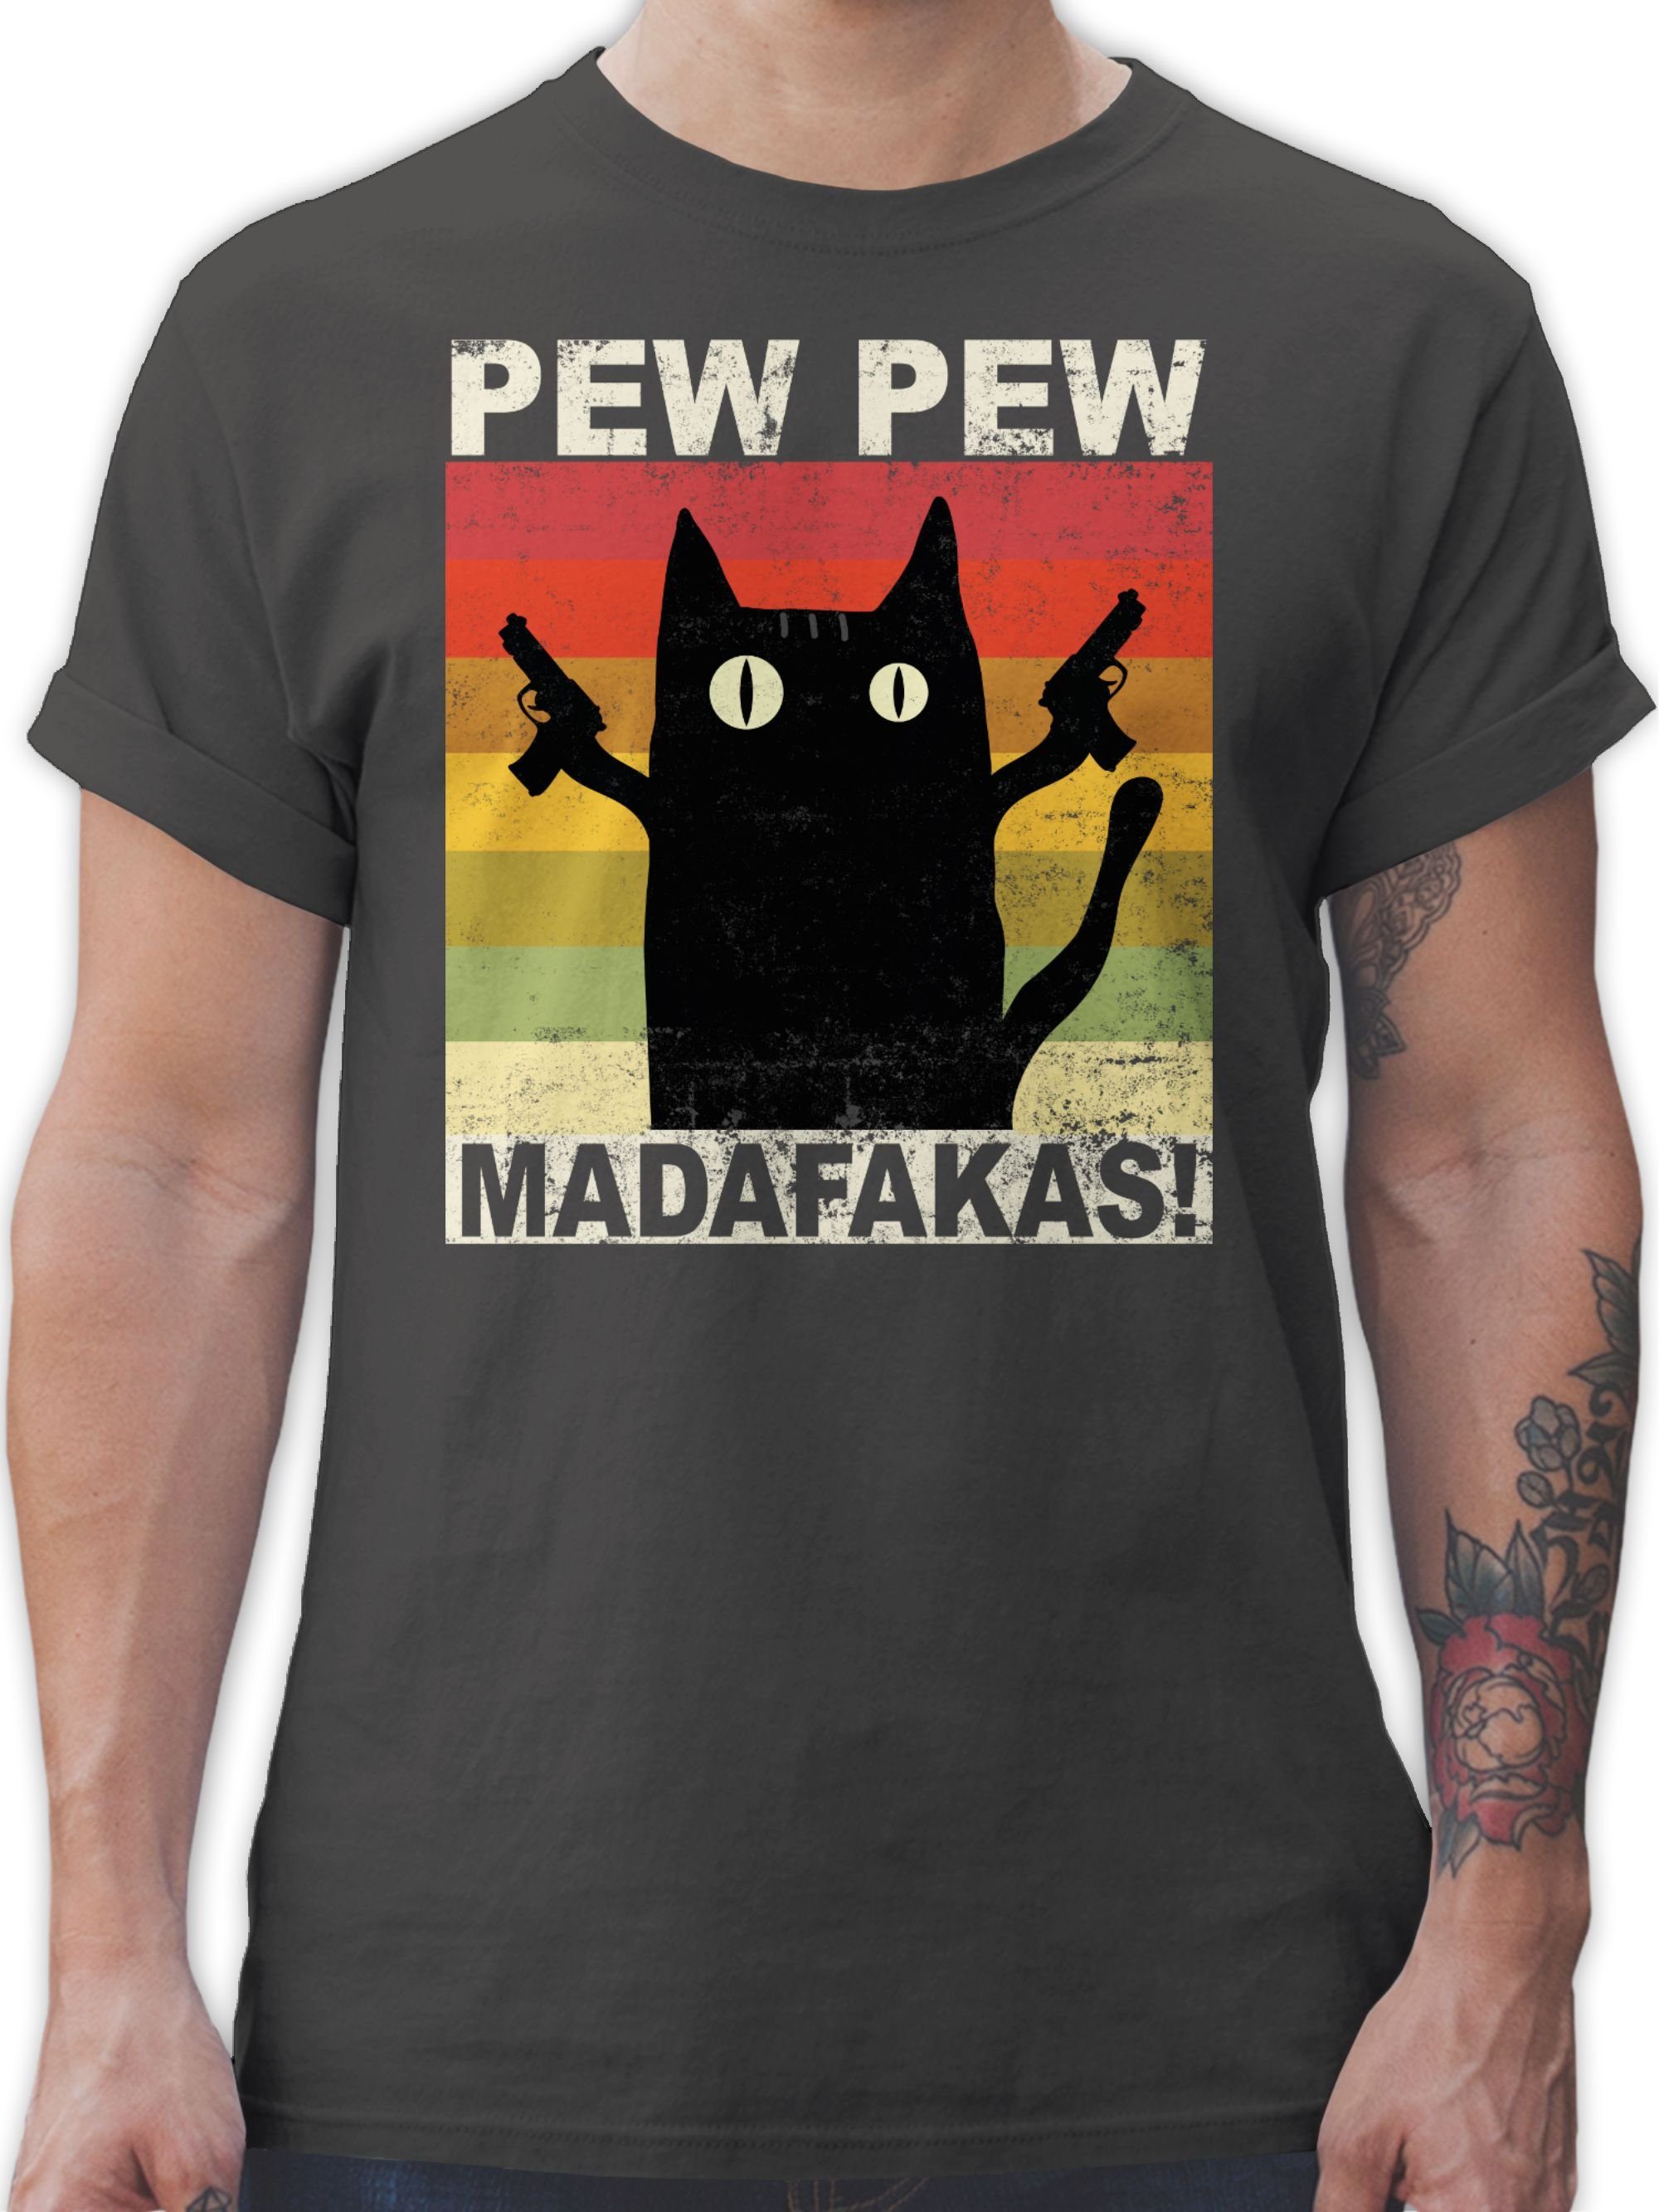 Dunkelgrau 02 Pew Pew T-Shirt Madafakas Statement Shirtracer Sprüche